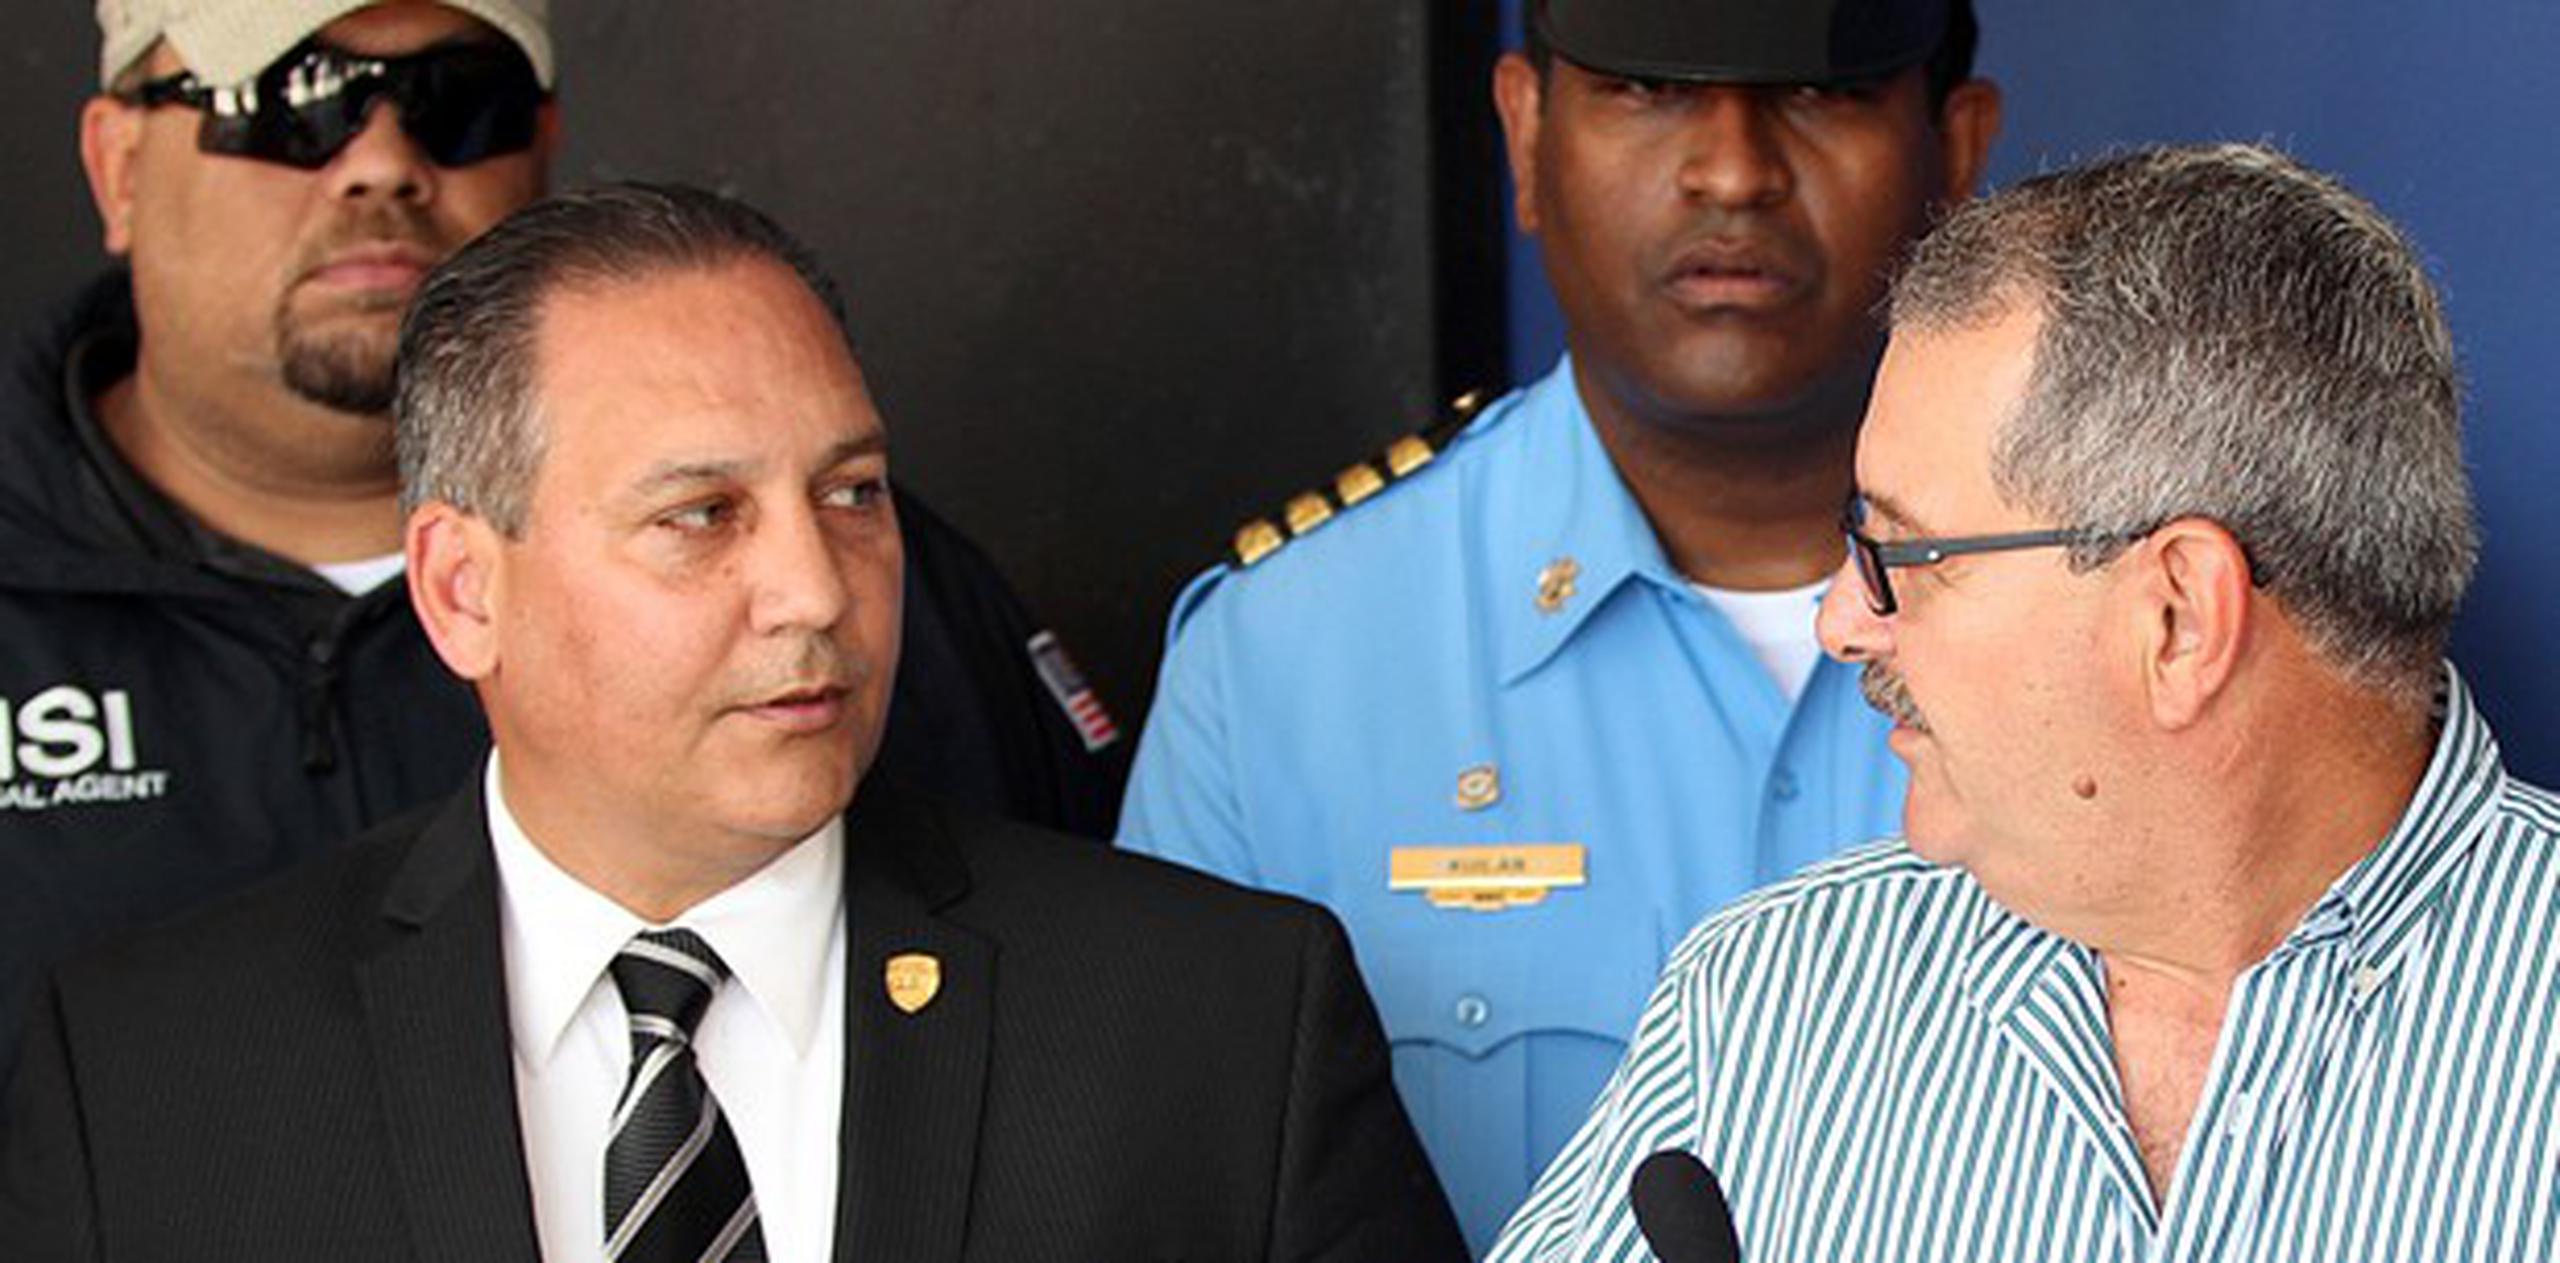 El coronel Juan B. Rodríguez Dávila (izquierda) fue designado hoy, viernes, como superintendente asociado de la Policía por el superintendente José L. Caldero López (derecha).  (alex.figueroa@gfrmedia.com)